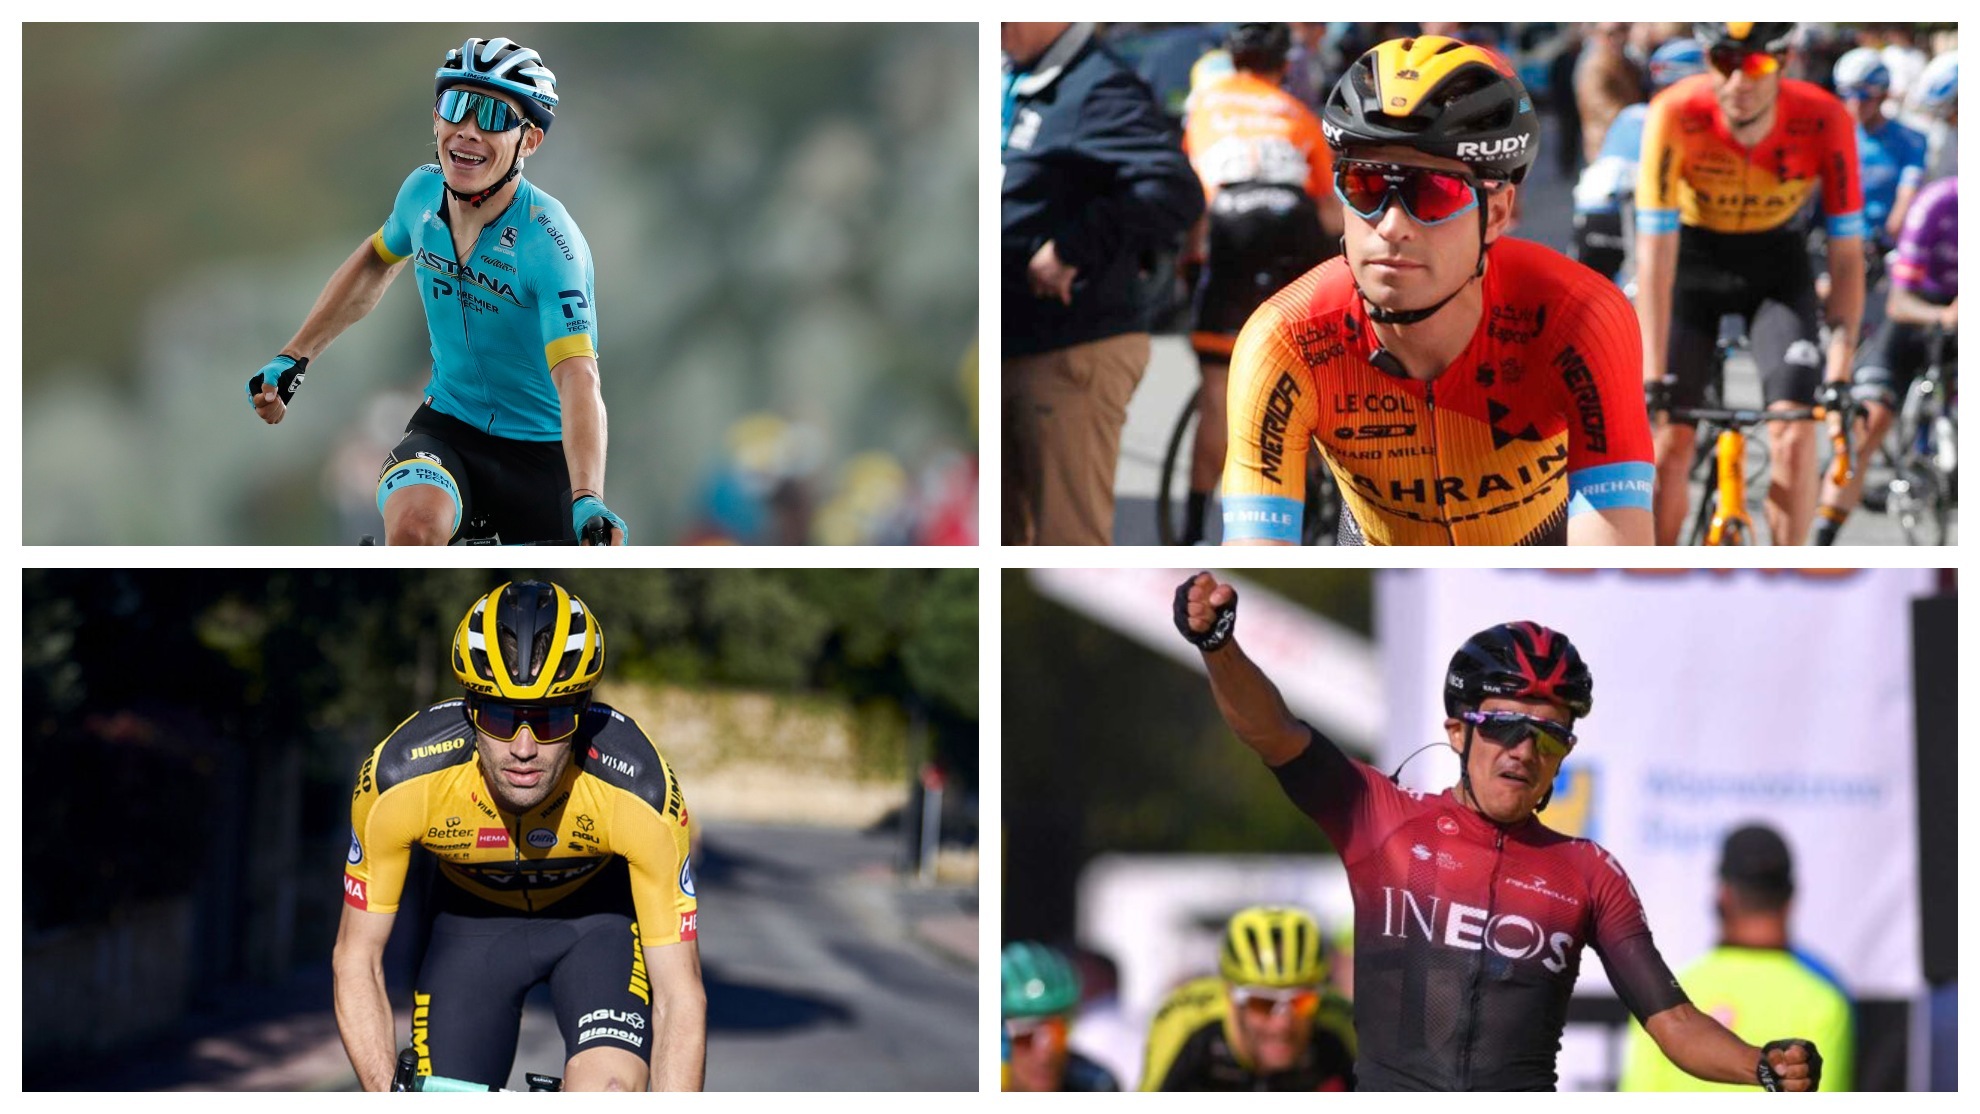 Il ciclismo del giorno: Supermn López, Landa, Carapaz, Dumoulin… Fantastico poster dei ciclisti “no Tour” per il Giro d’Italia 2022